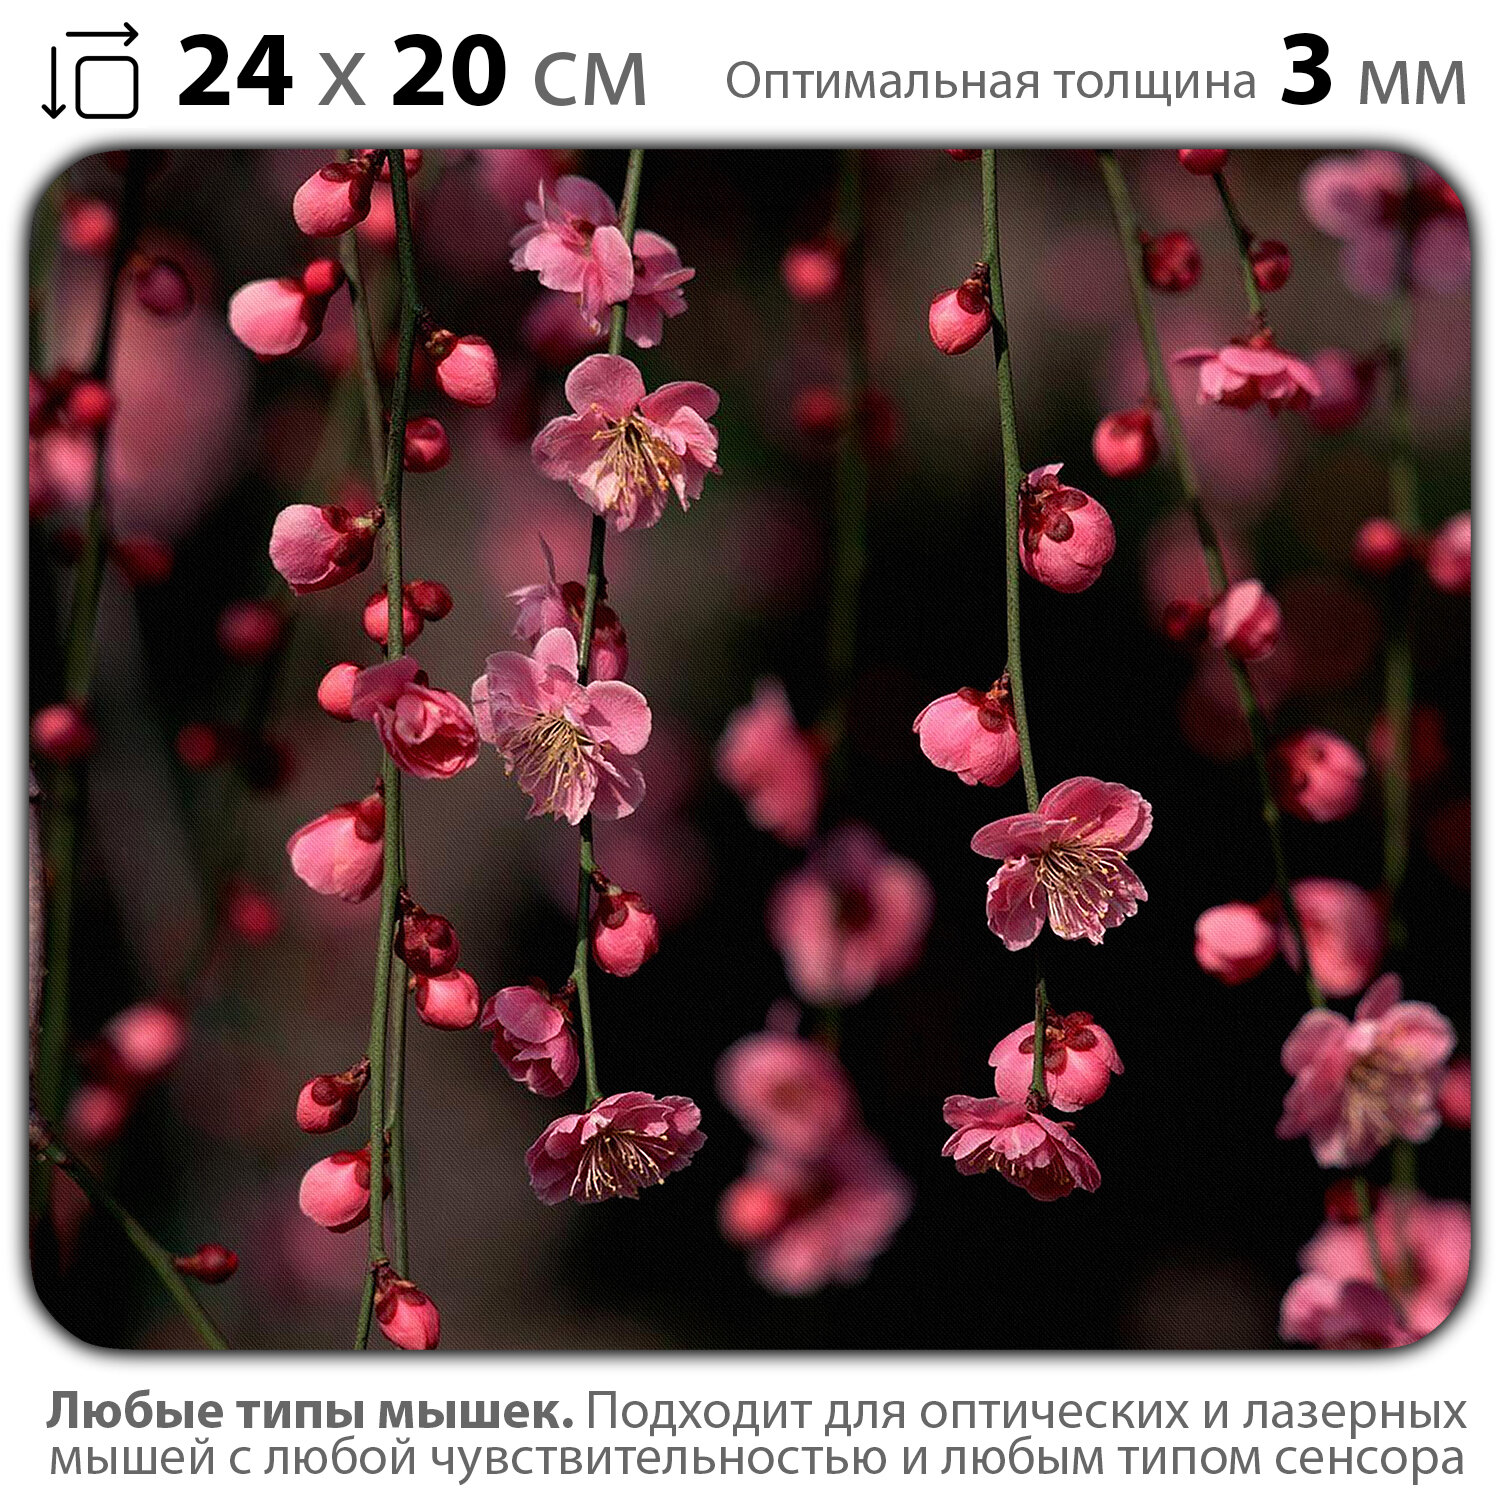 Коврик для мыши "Первоцвет с висящими садами с ветками Сакуры" (24 x 20 см x 3 мм)